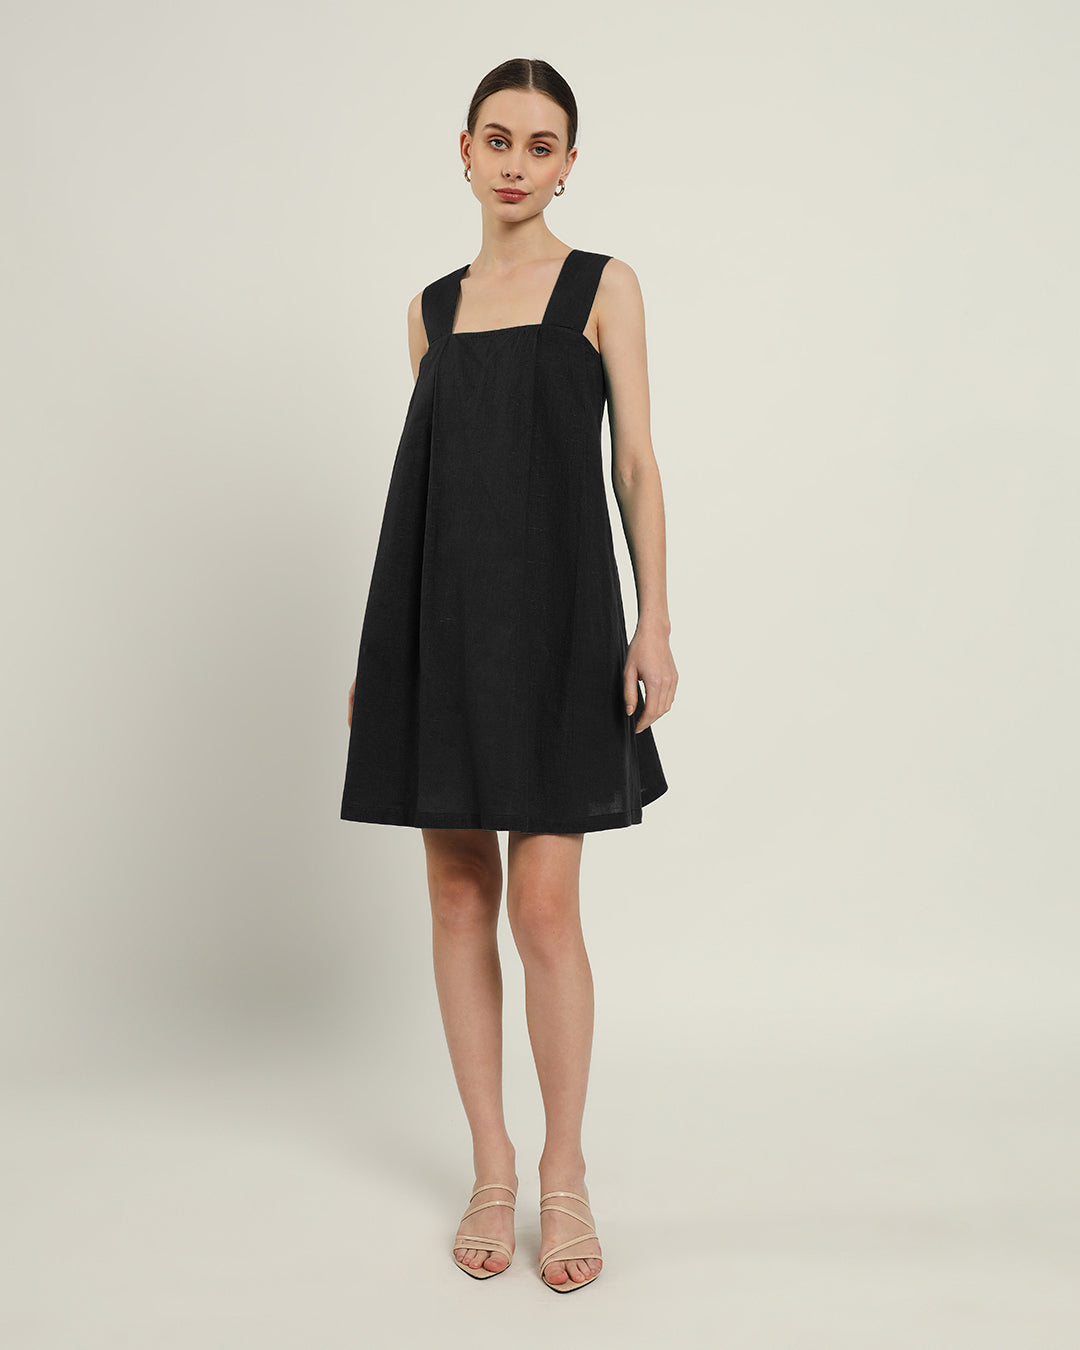 The Larissa Noir Cotton Dress